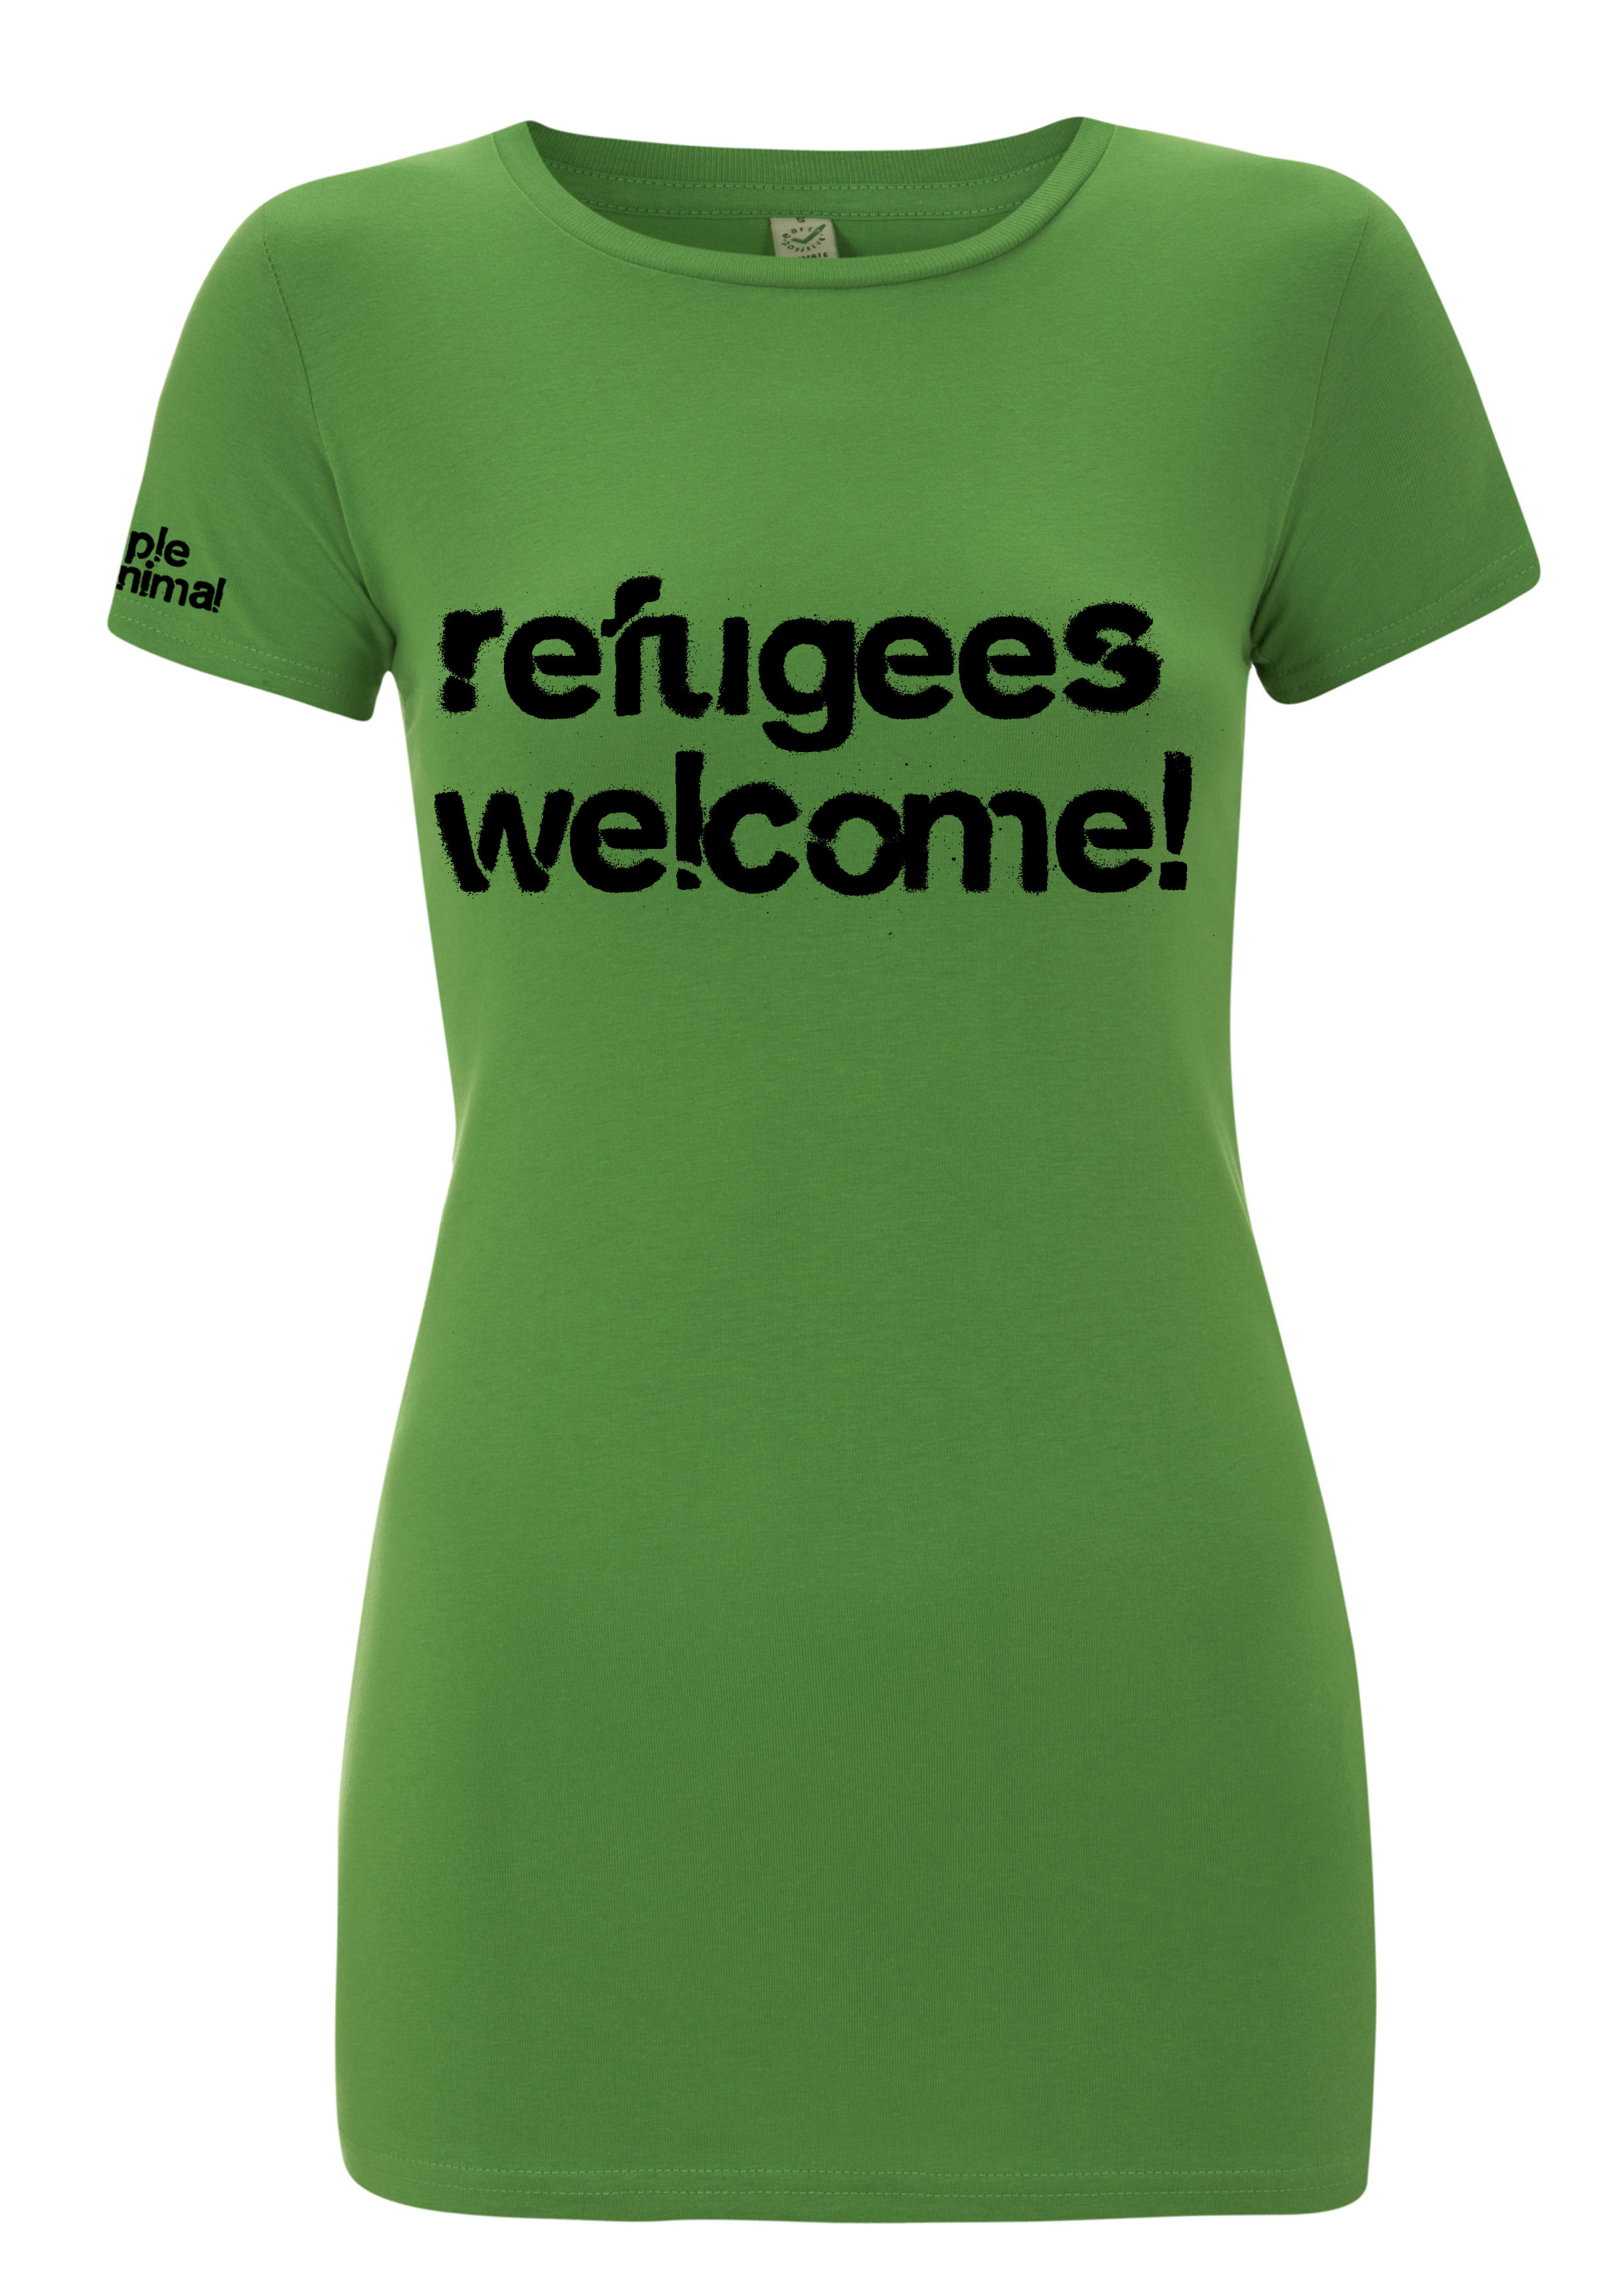 Refugees_Classic Girls Light Green.jpg